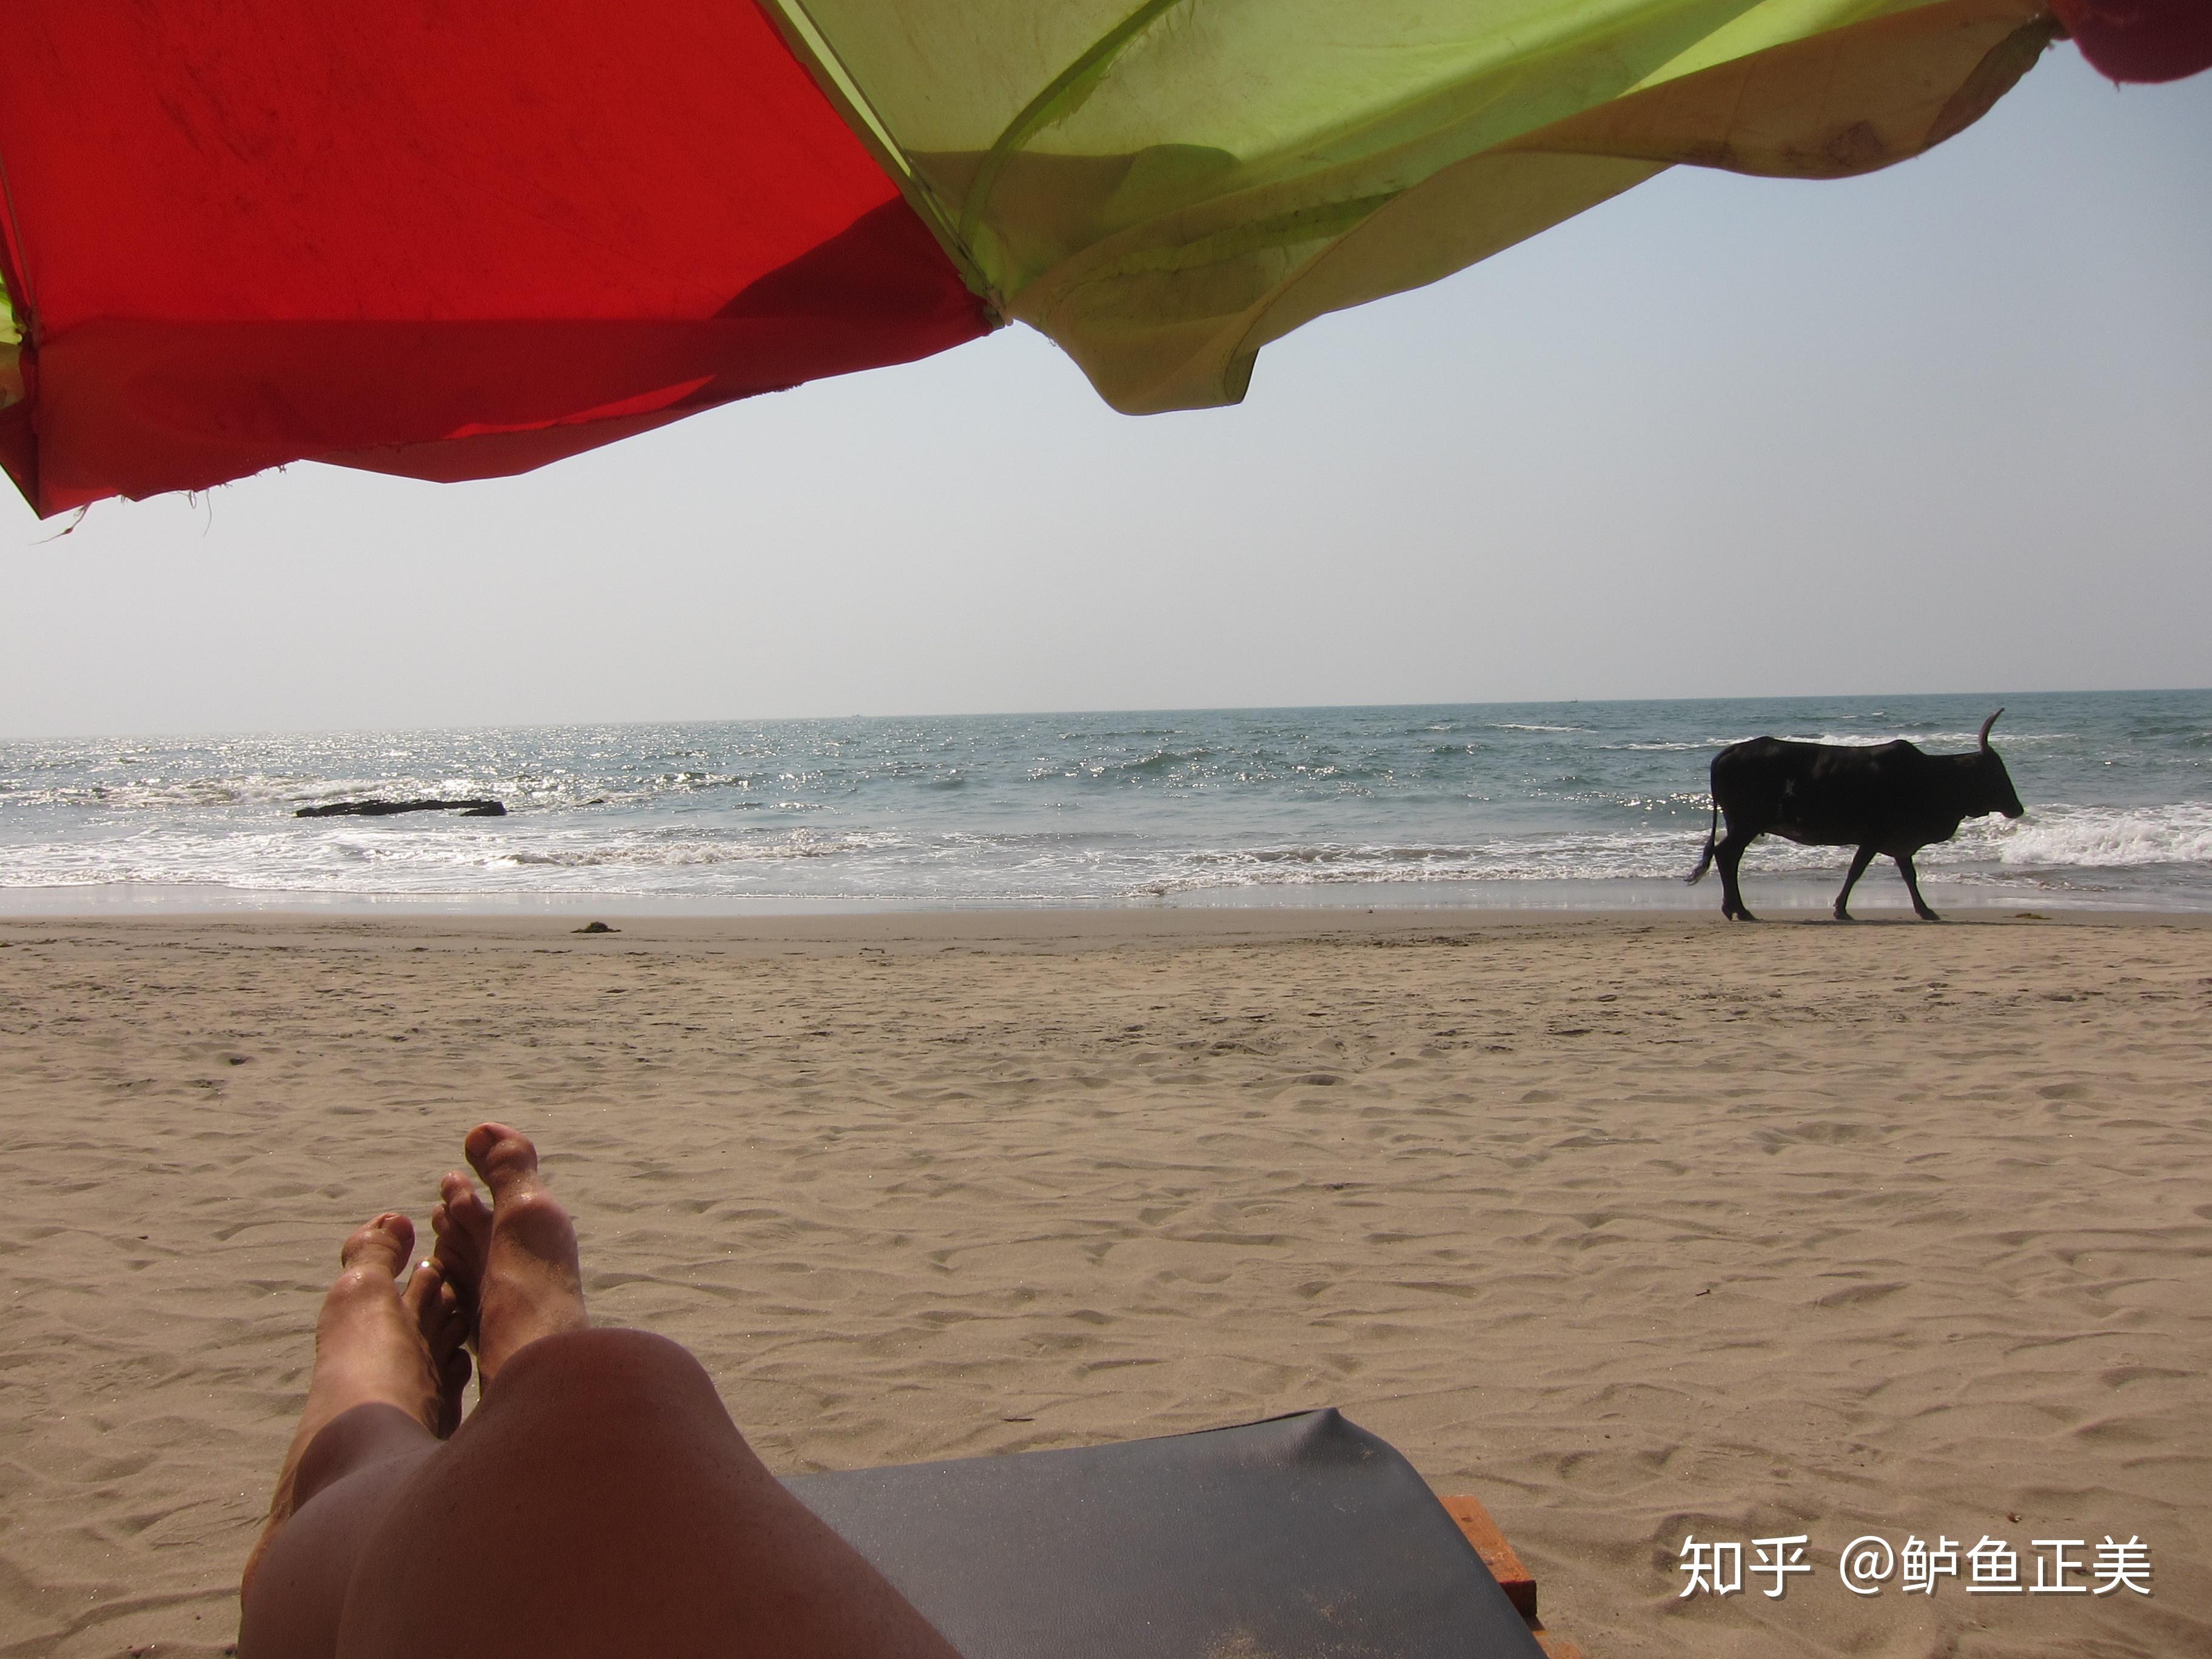 晒日光浴在海滩的人们 图库摄影片. 图片 包括有 地中海, 海岸, 欧洲, 火箭筒, 拱道, 拥挤, 意大利 - 89955017